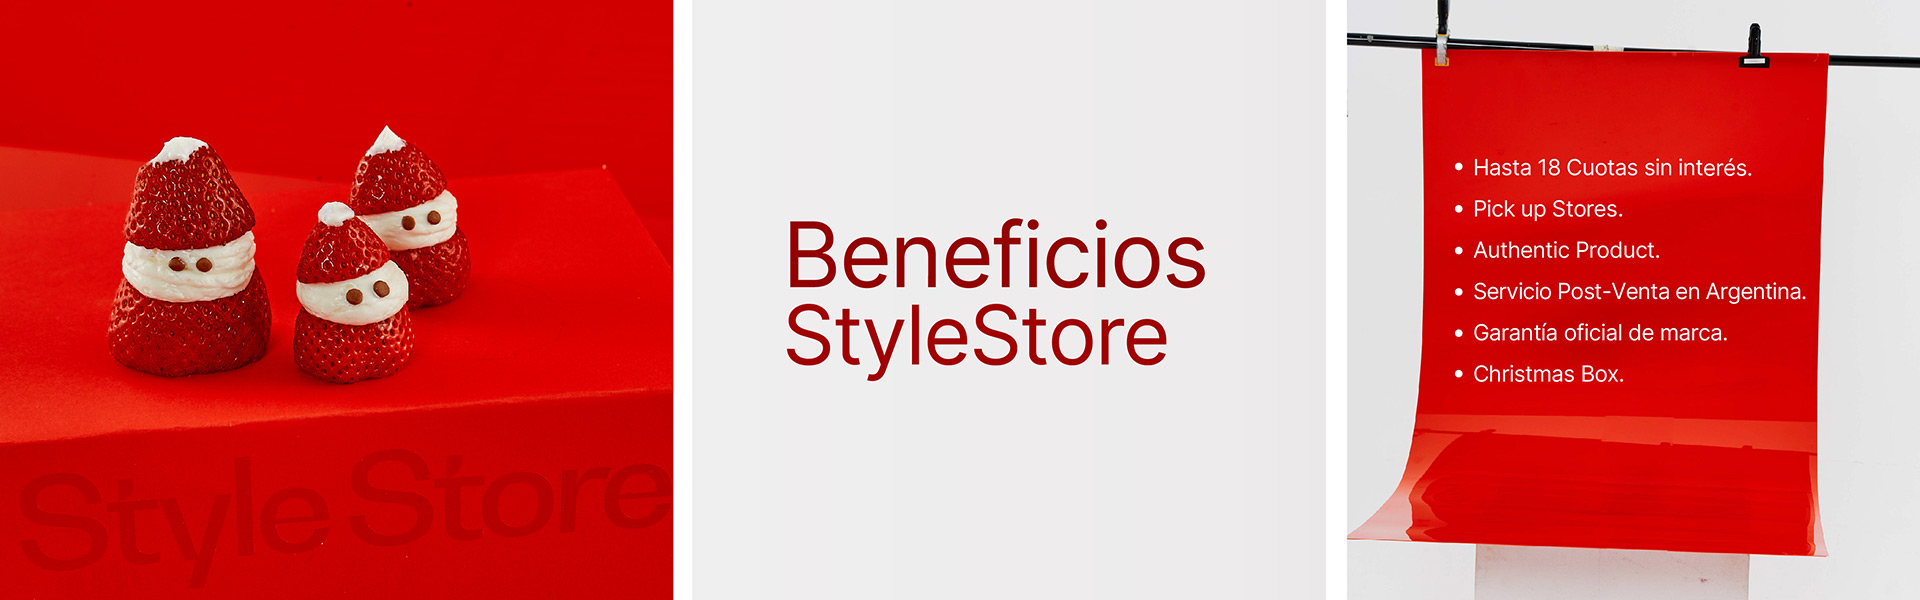 Beneficios StyleStore